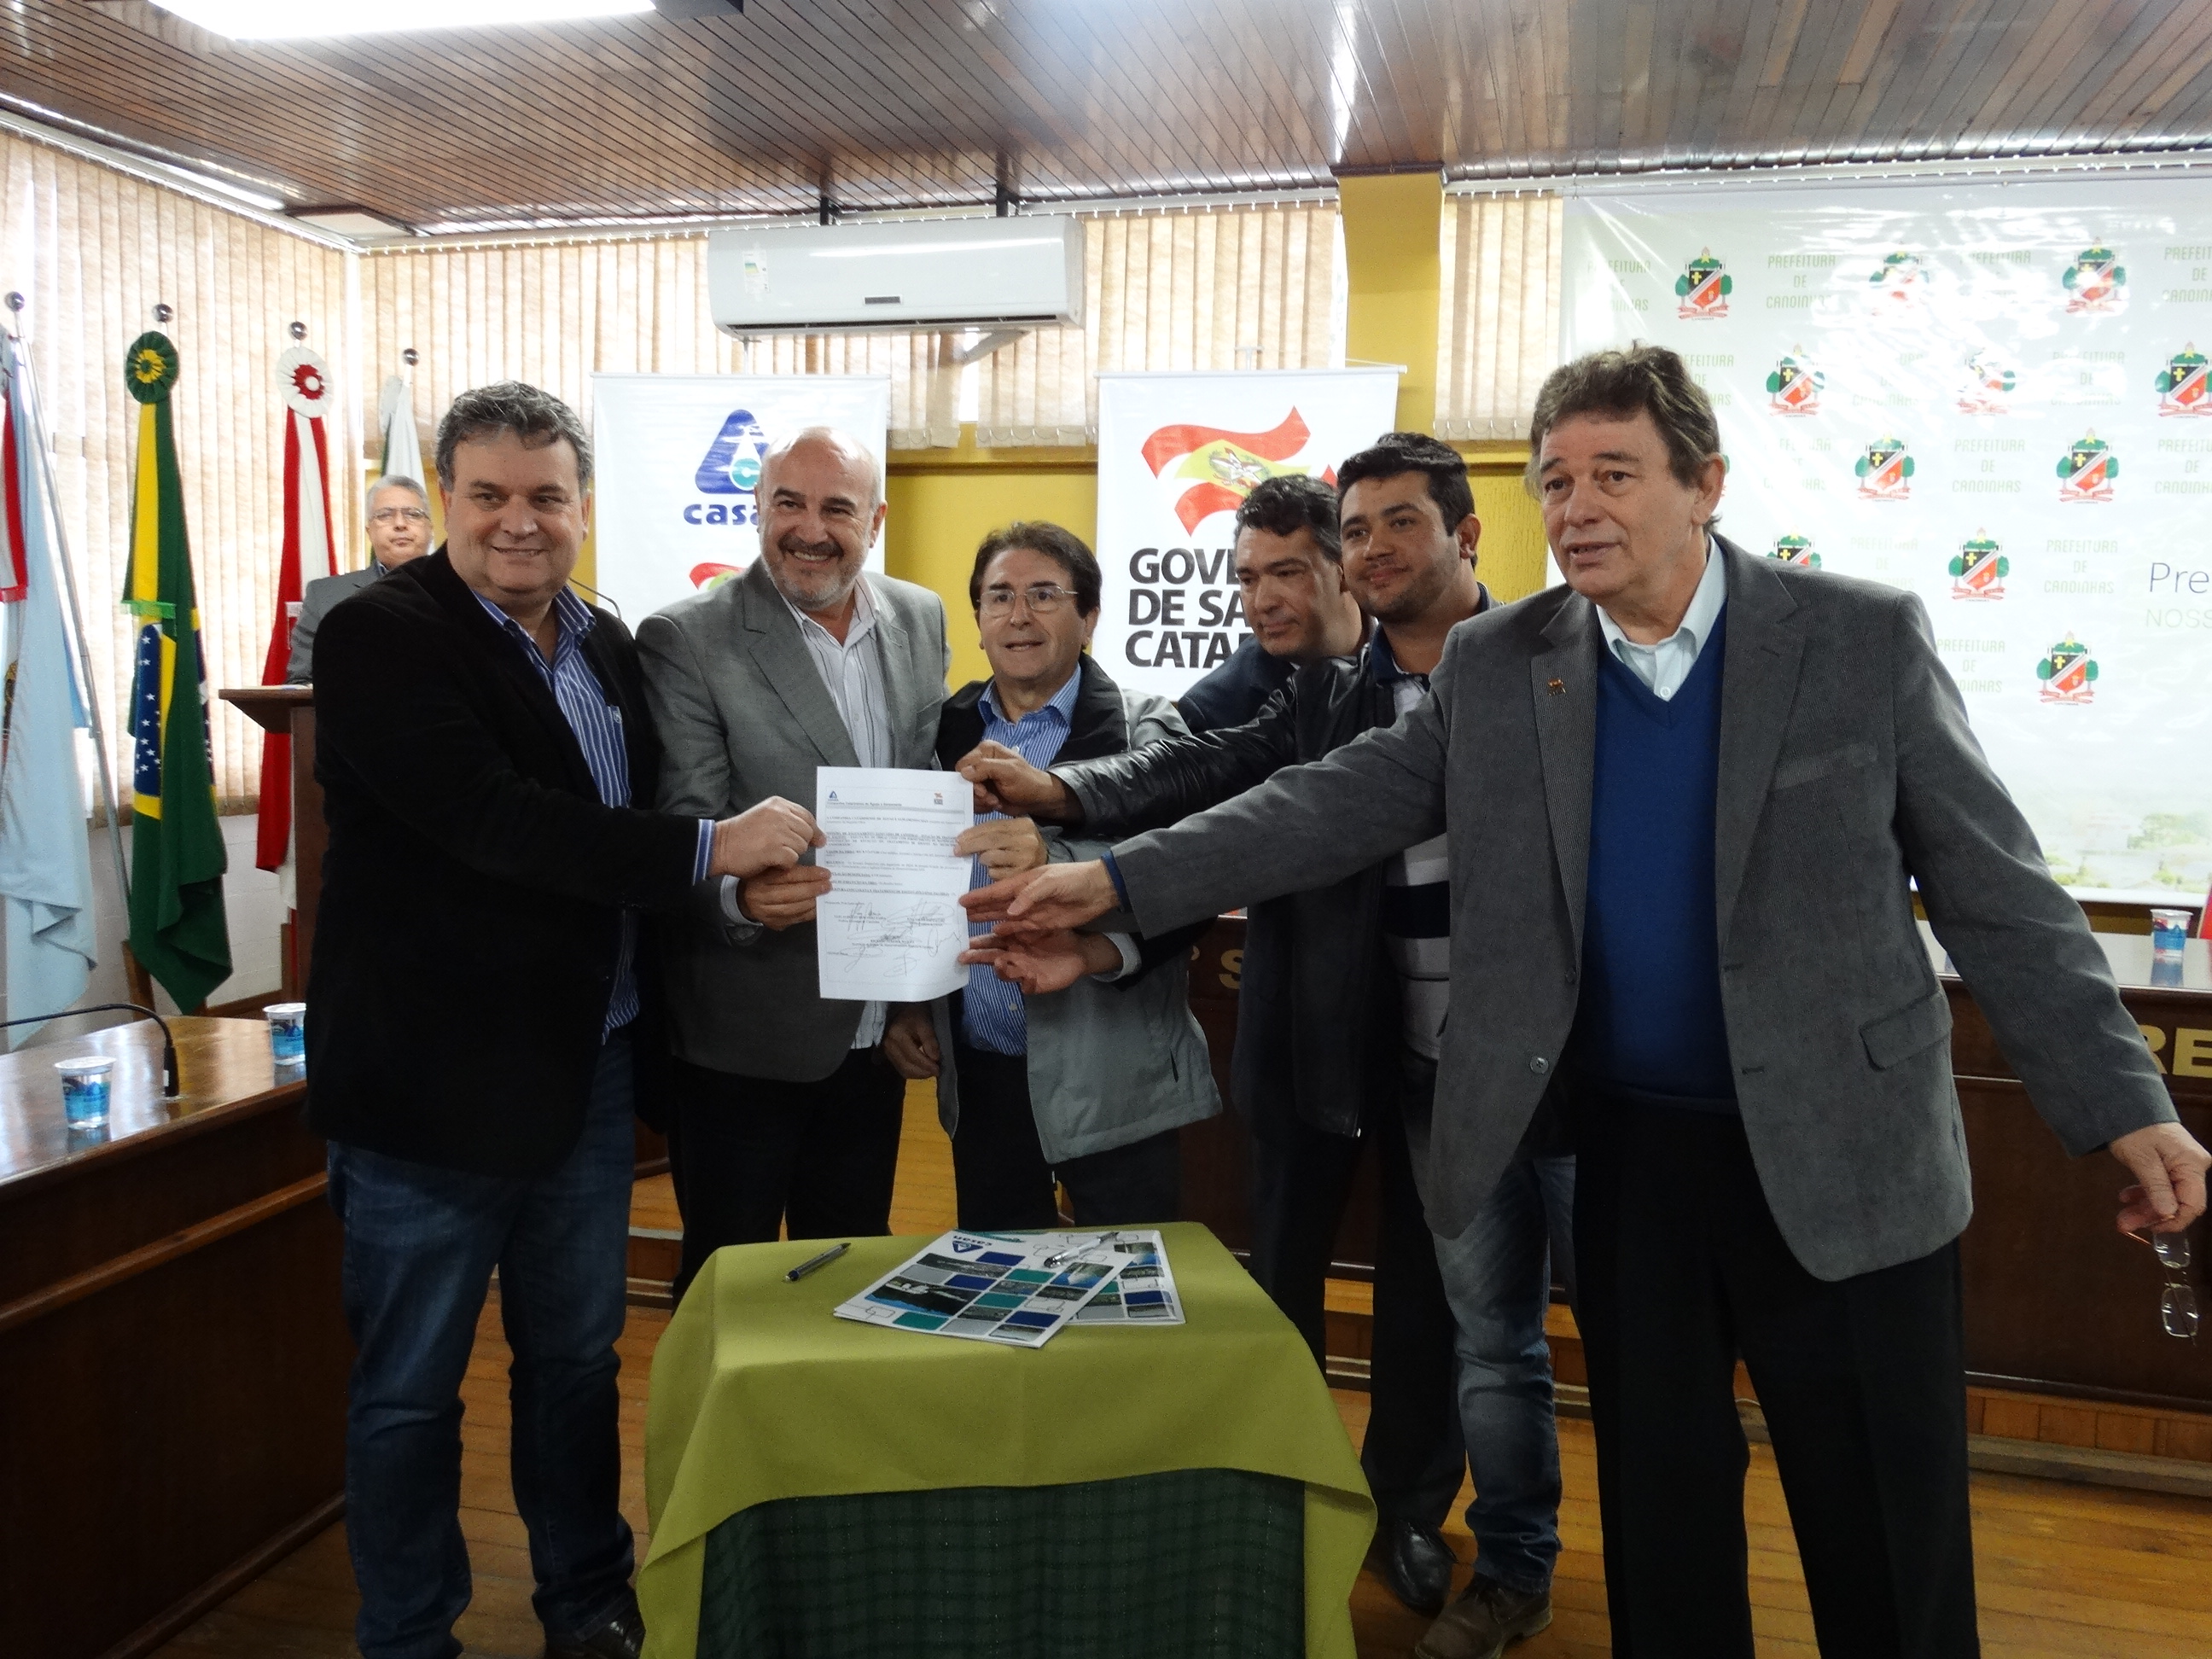 Casan lança edital de licitação para construção da Estação de Tratamento de Esgoto de Canoinhas